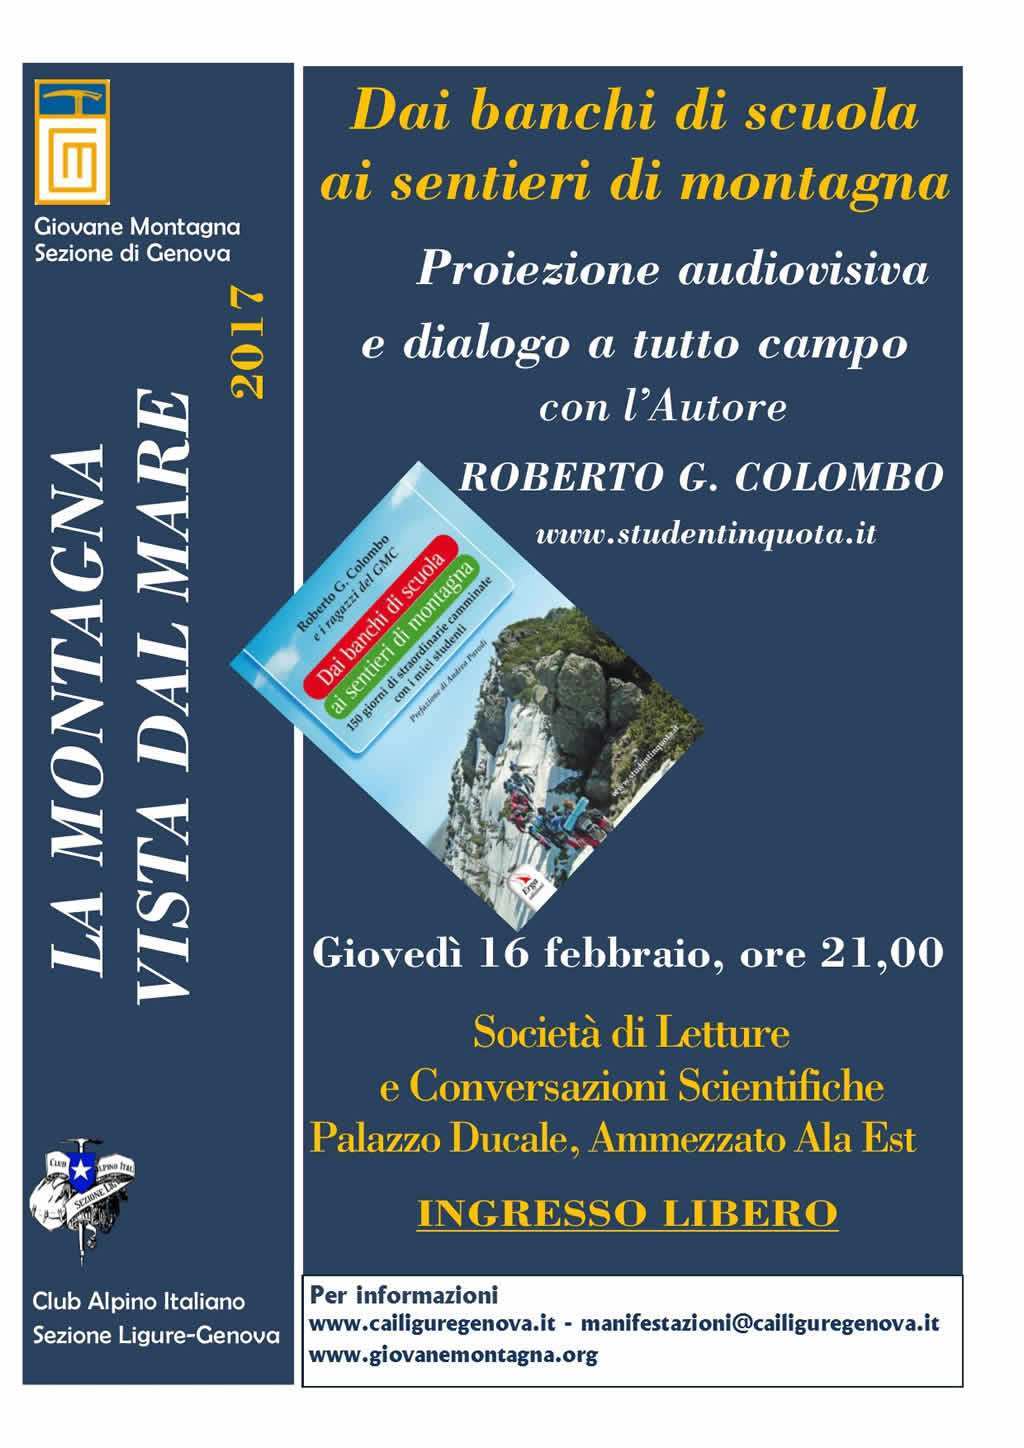 Locandina presentazione Palazzo Ducale del libro "Dai banchi di scuola ai sentieri di montagna"